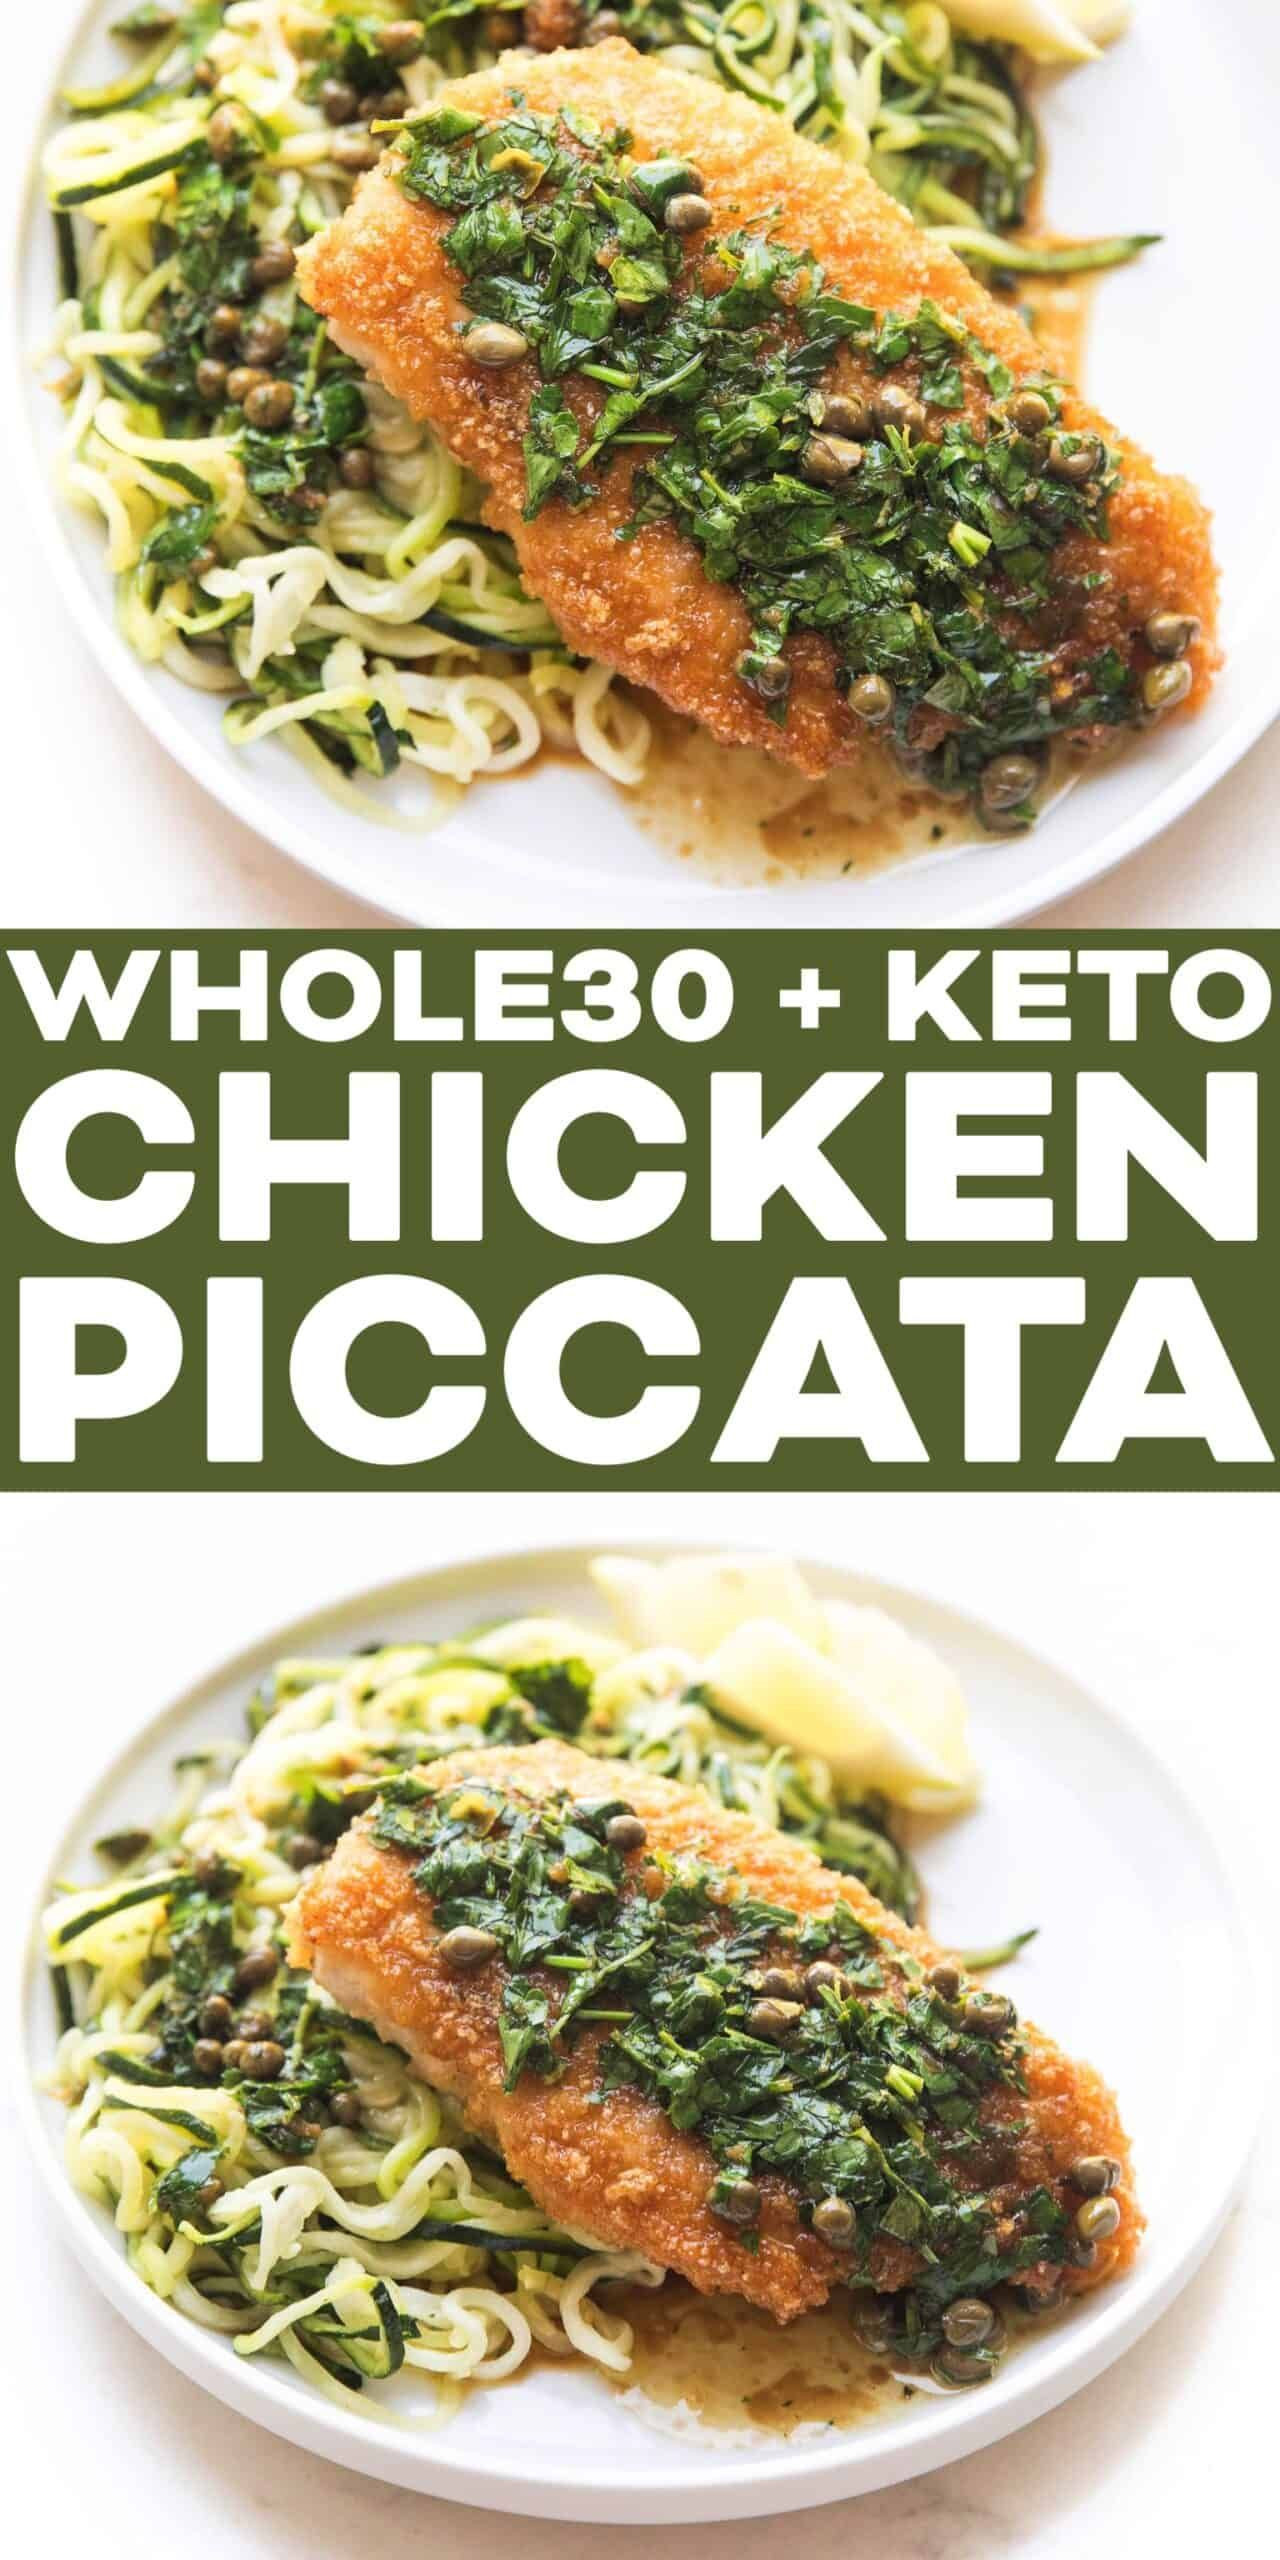 Clean Keto Chicken Recipes
 Whole30 Keto Chicken Piccata in 2020